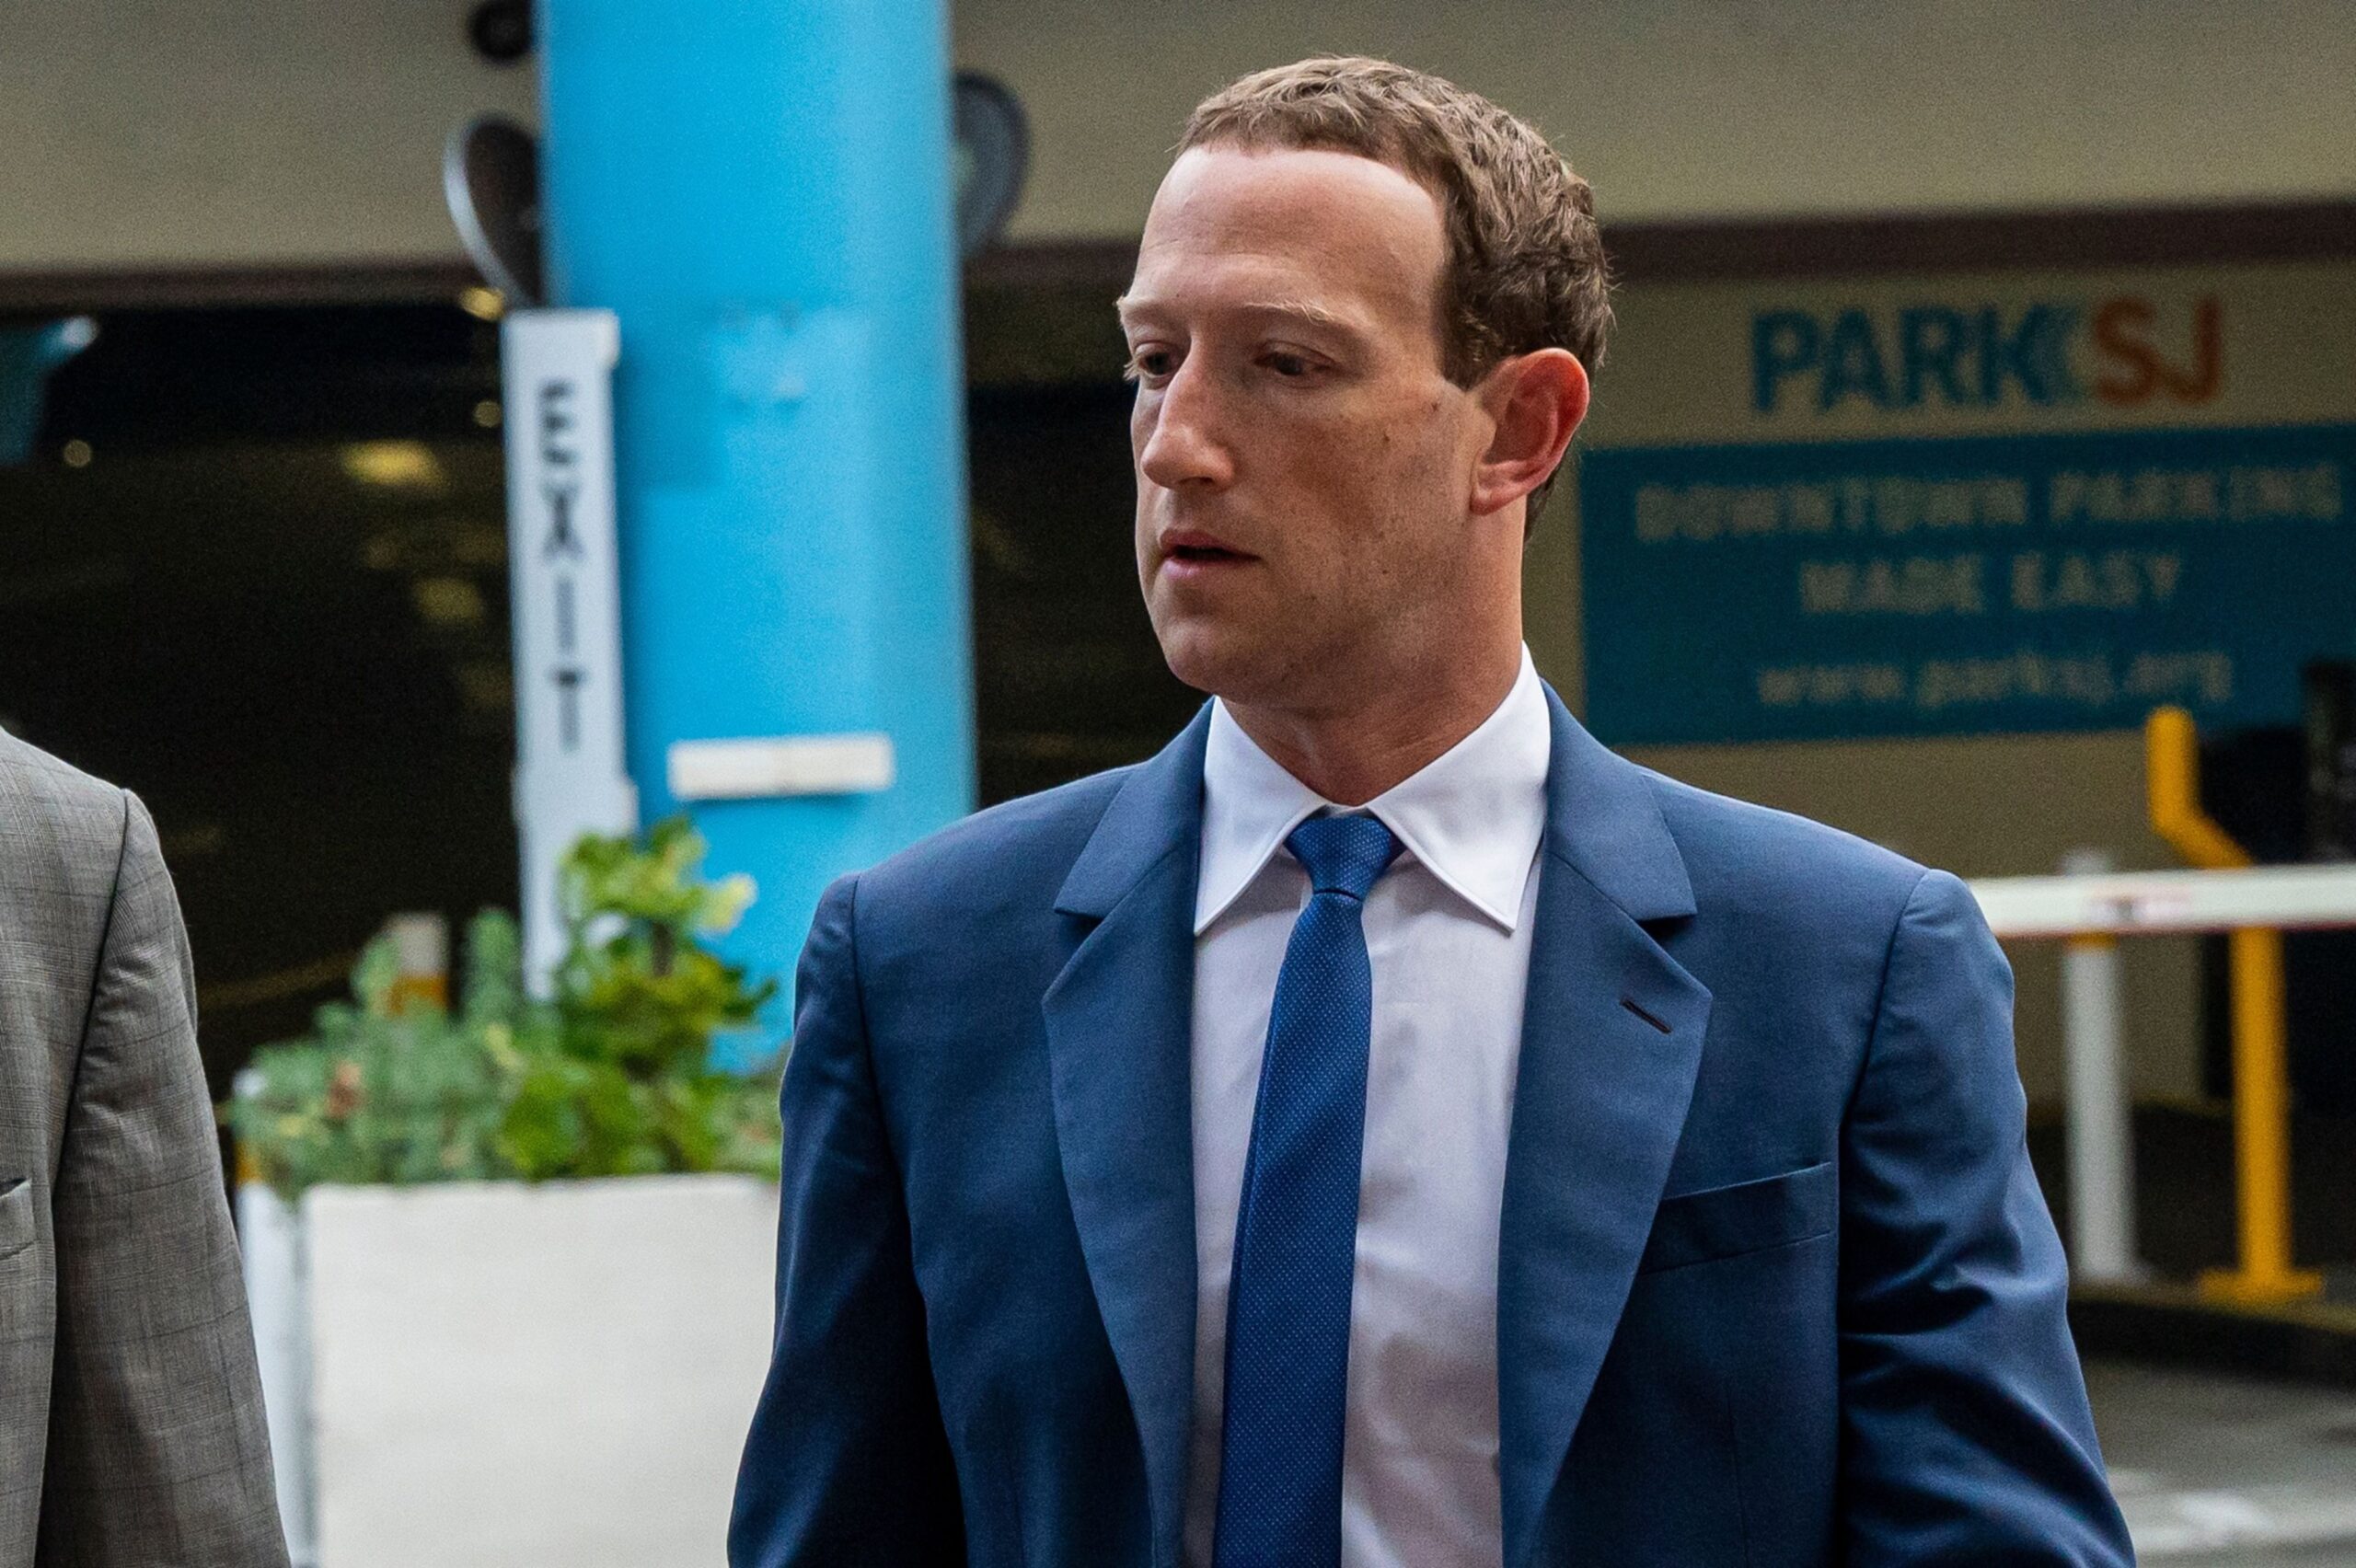 Zuckerberg Was Warned on Social Media Addiction, Filing Says